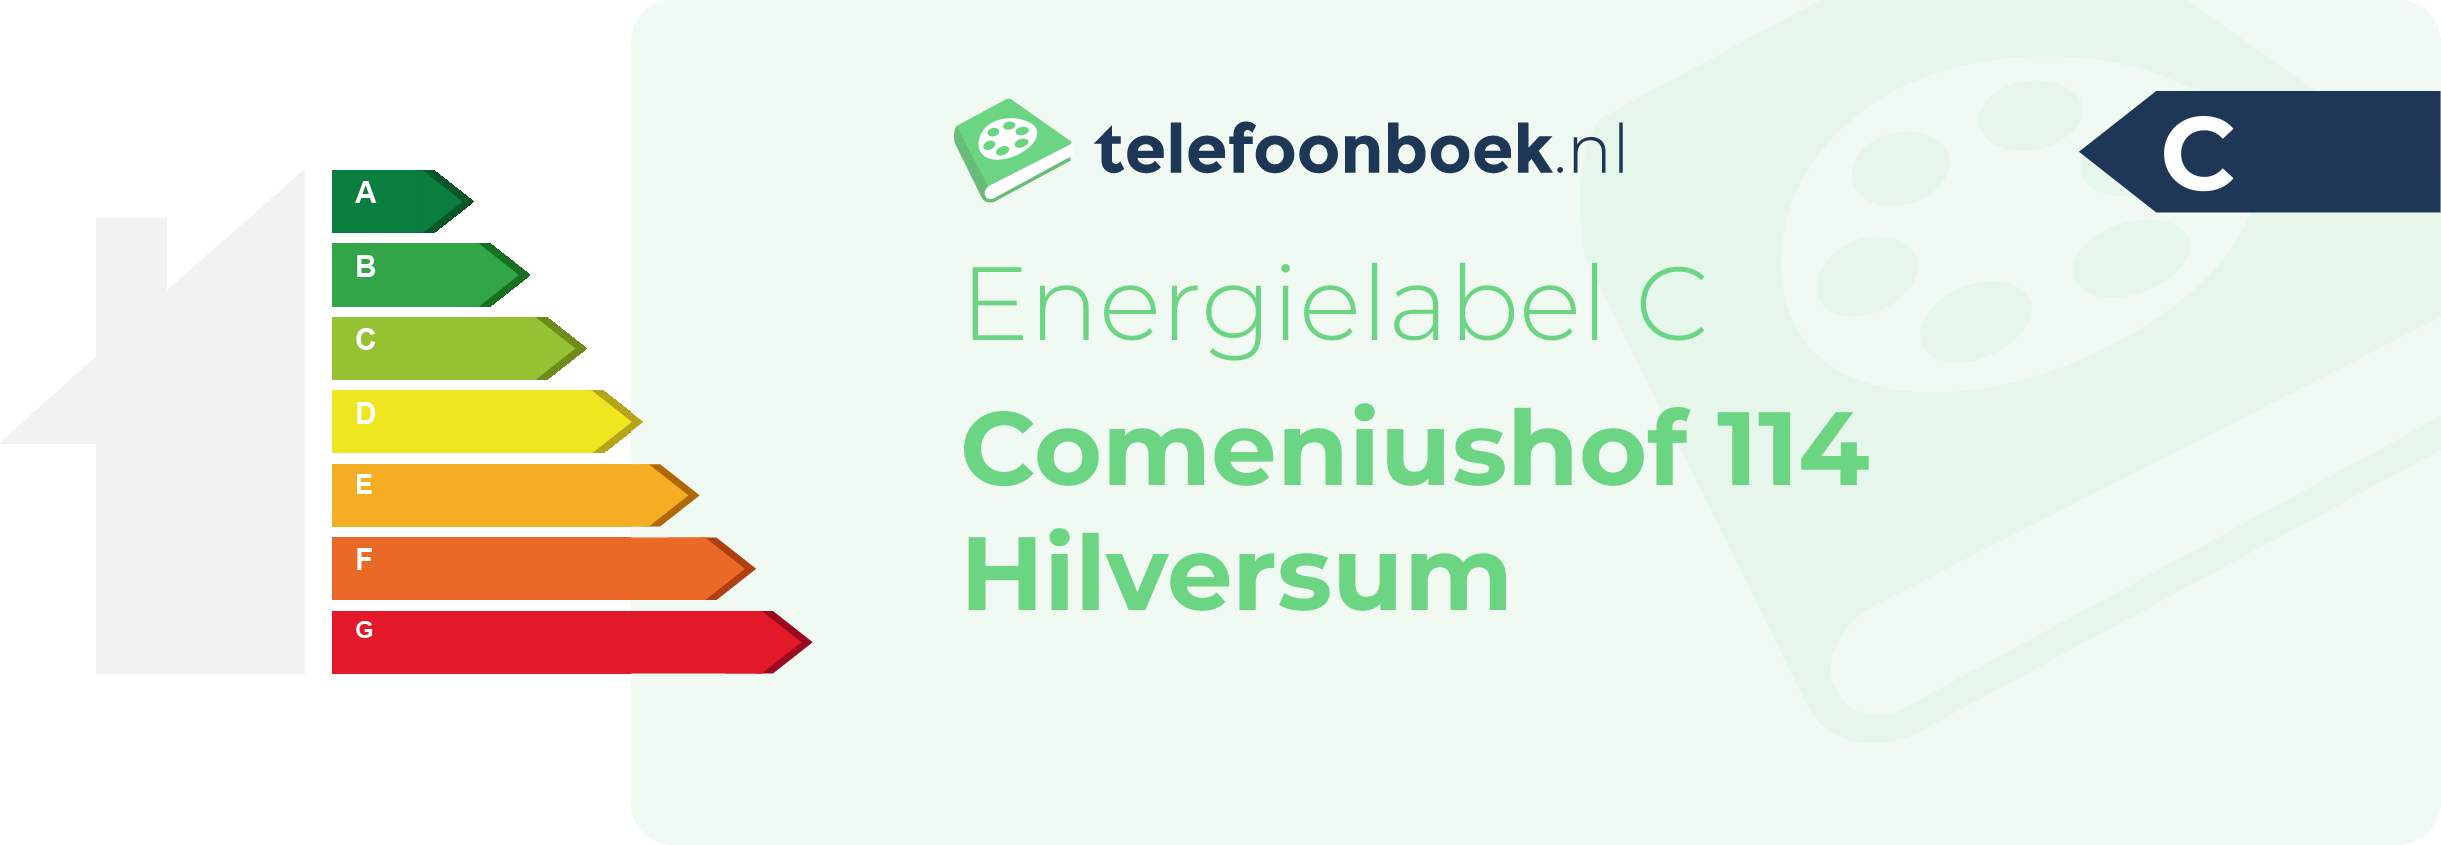 Energielabel Comeniushof 114 Hilversum